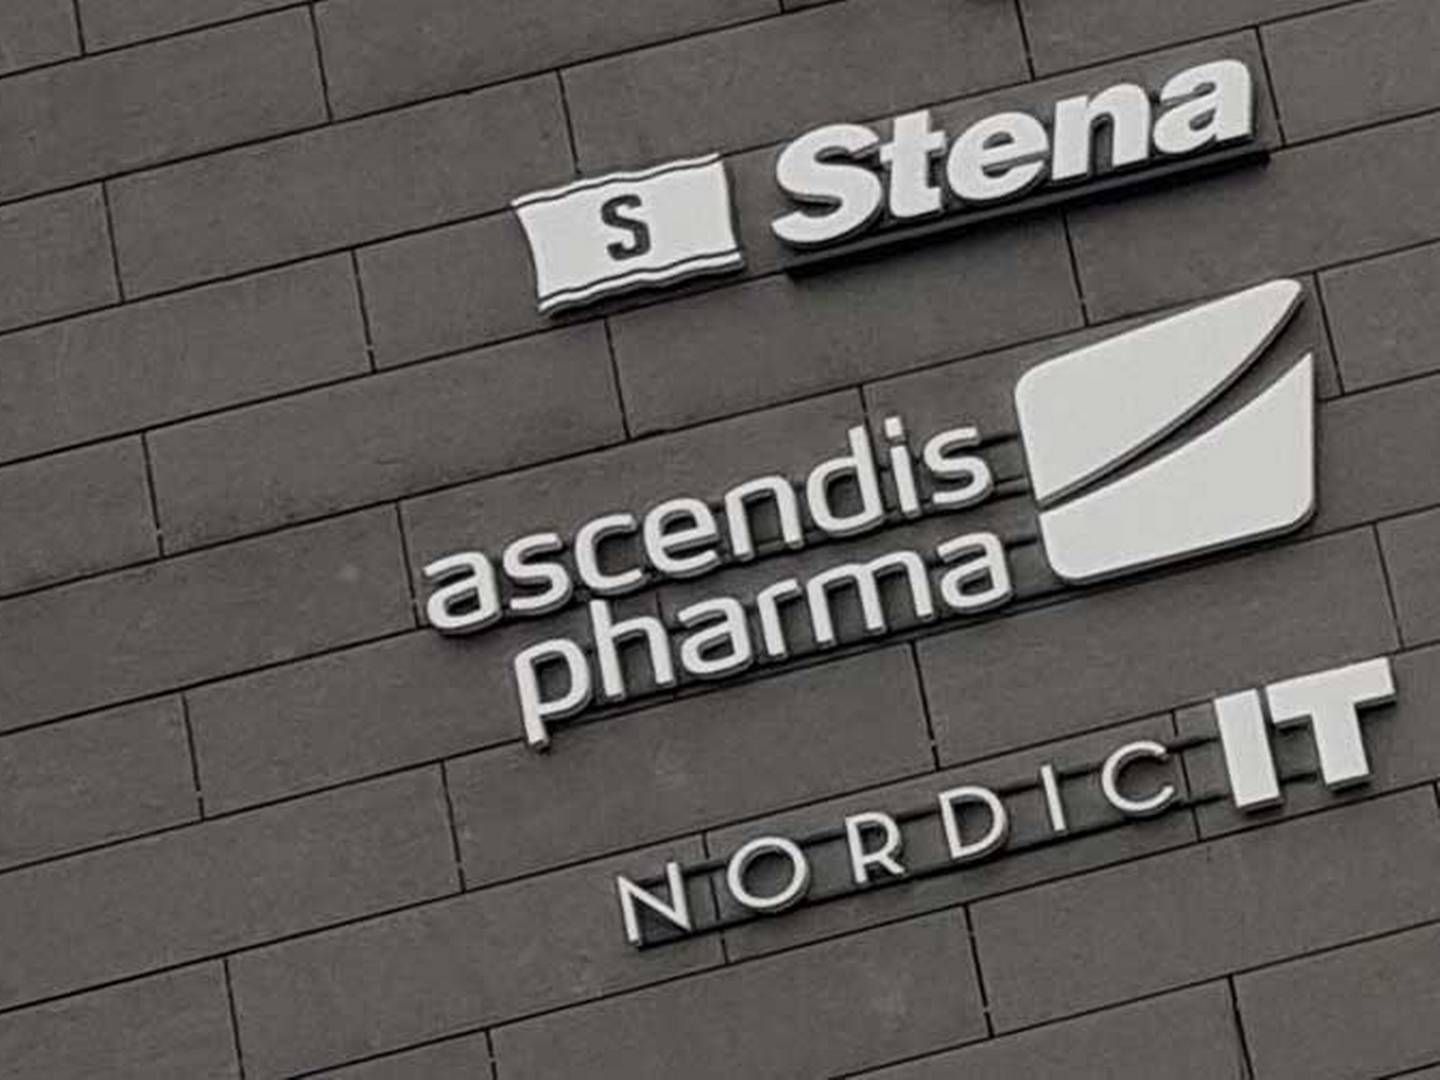 Ascendis Pharma har ikke et fuldt overblik over markedspotentialet for selskabets lægemiddel Yorvipath i Storbritannien, hvor det netop er levet godkendt. | Foto: Kevin Grønnemann / Medwatch